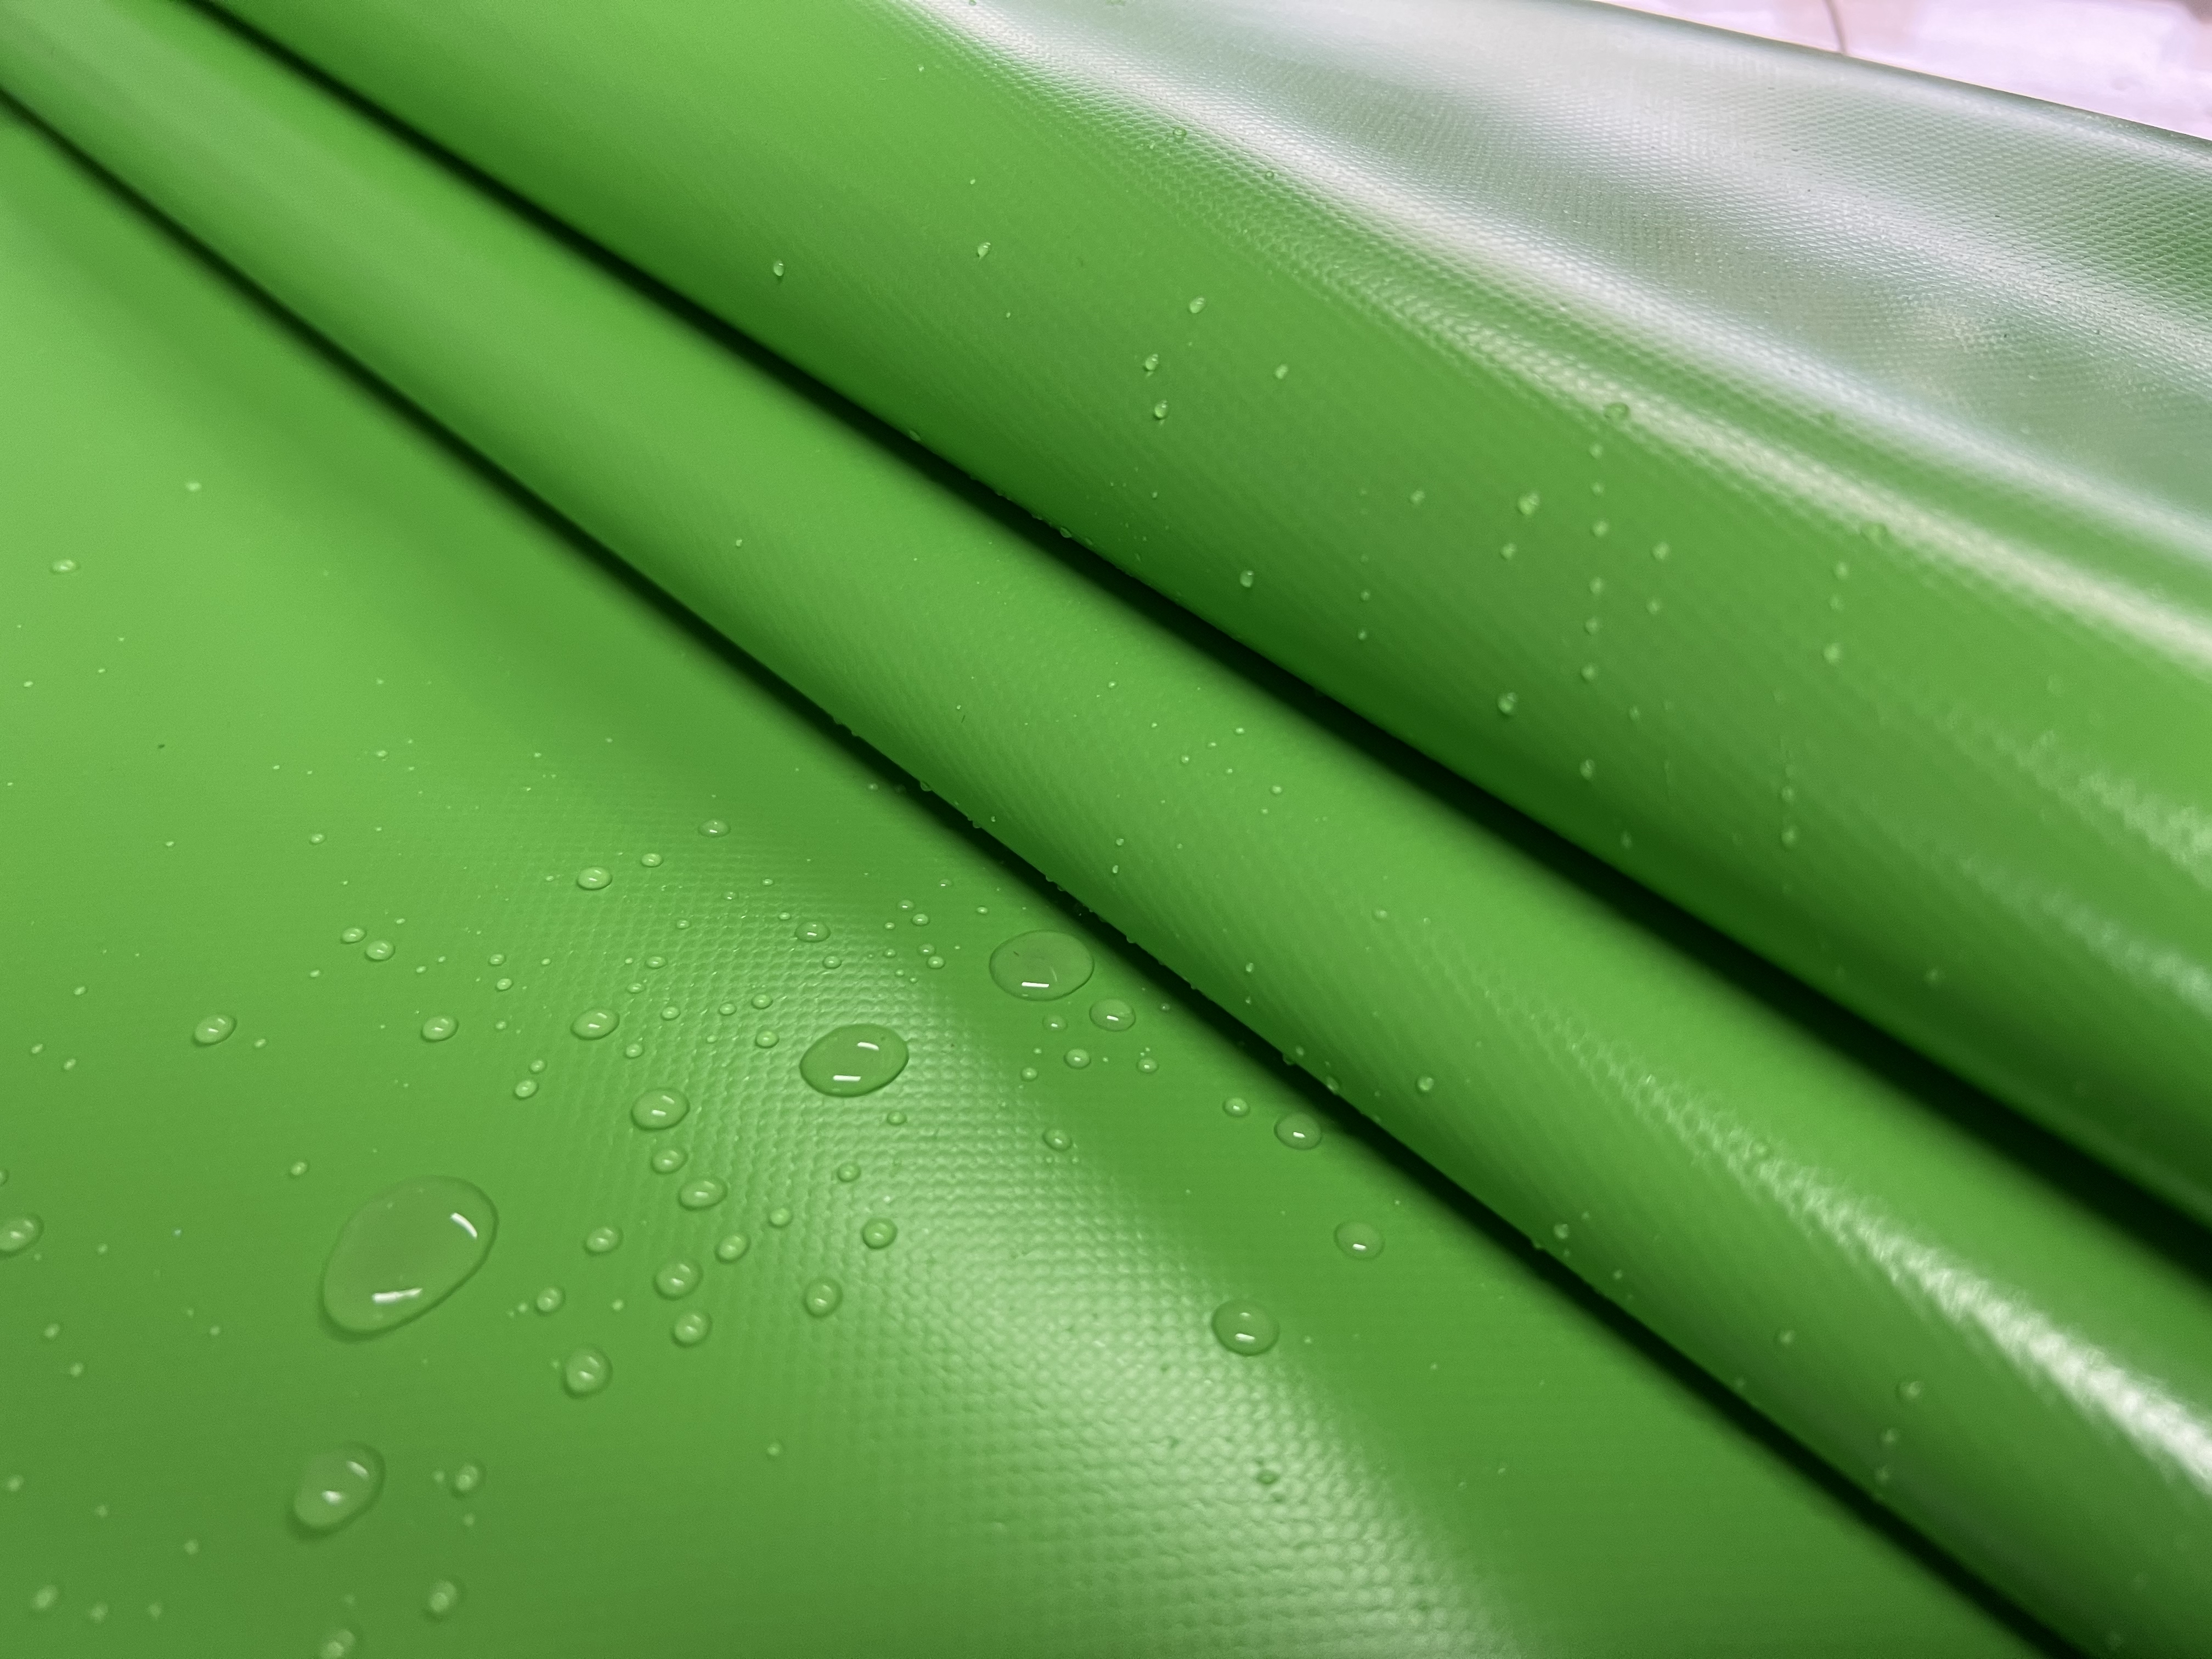 PVC coated tarpaulin,green tarpaulin,pillow tank material,high quality tarpaulin